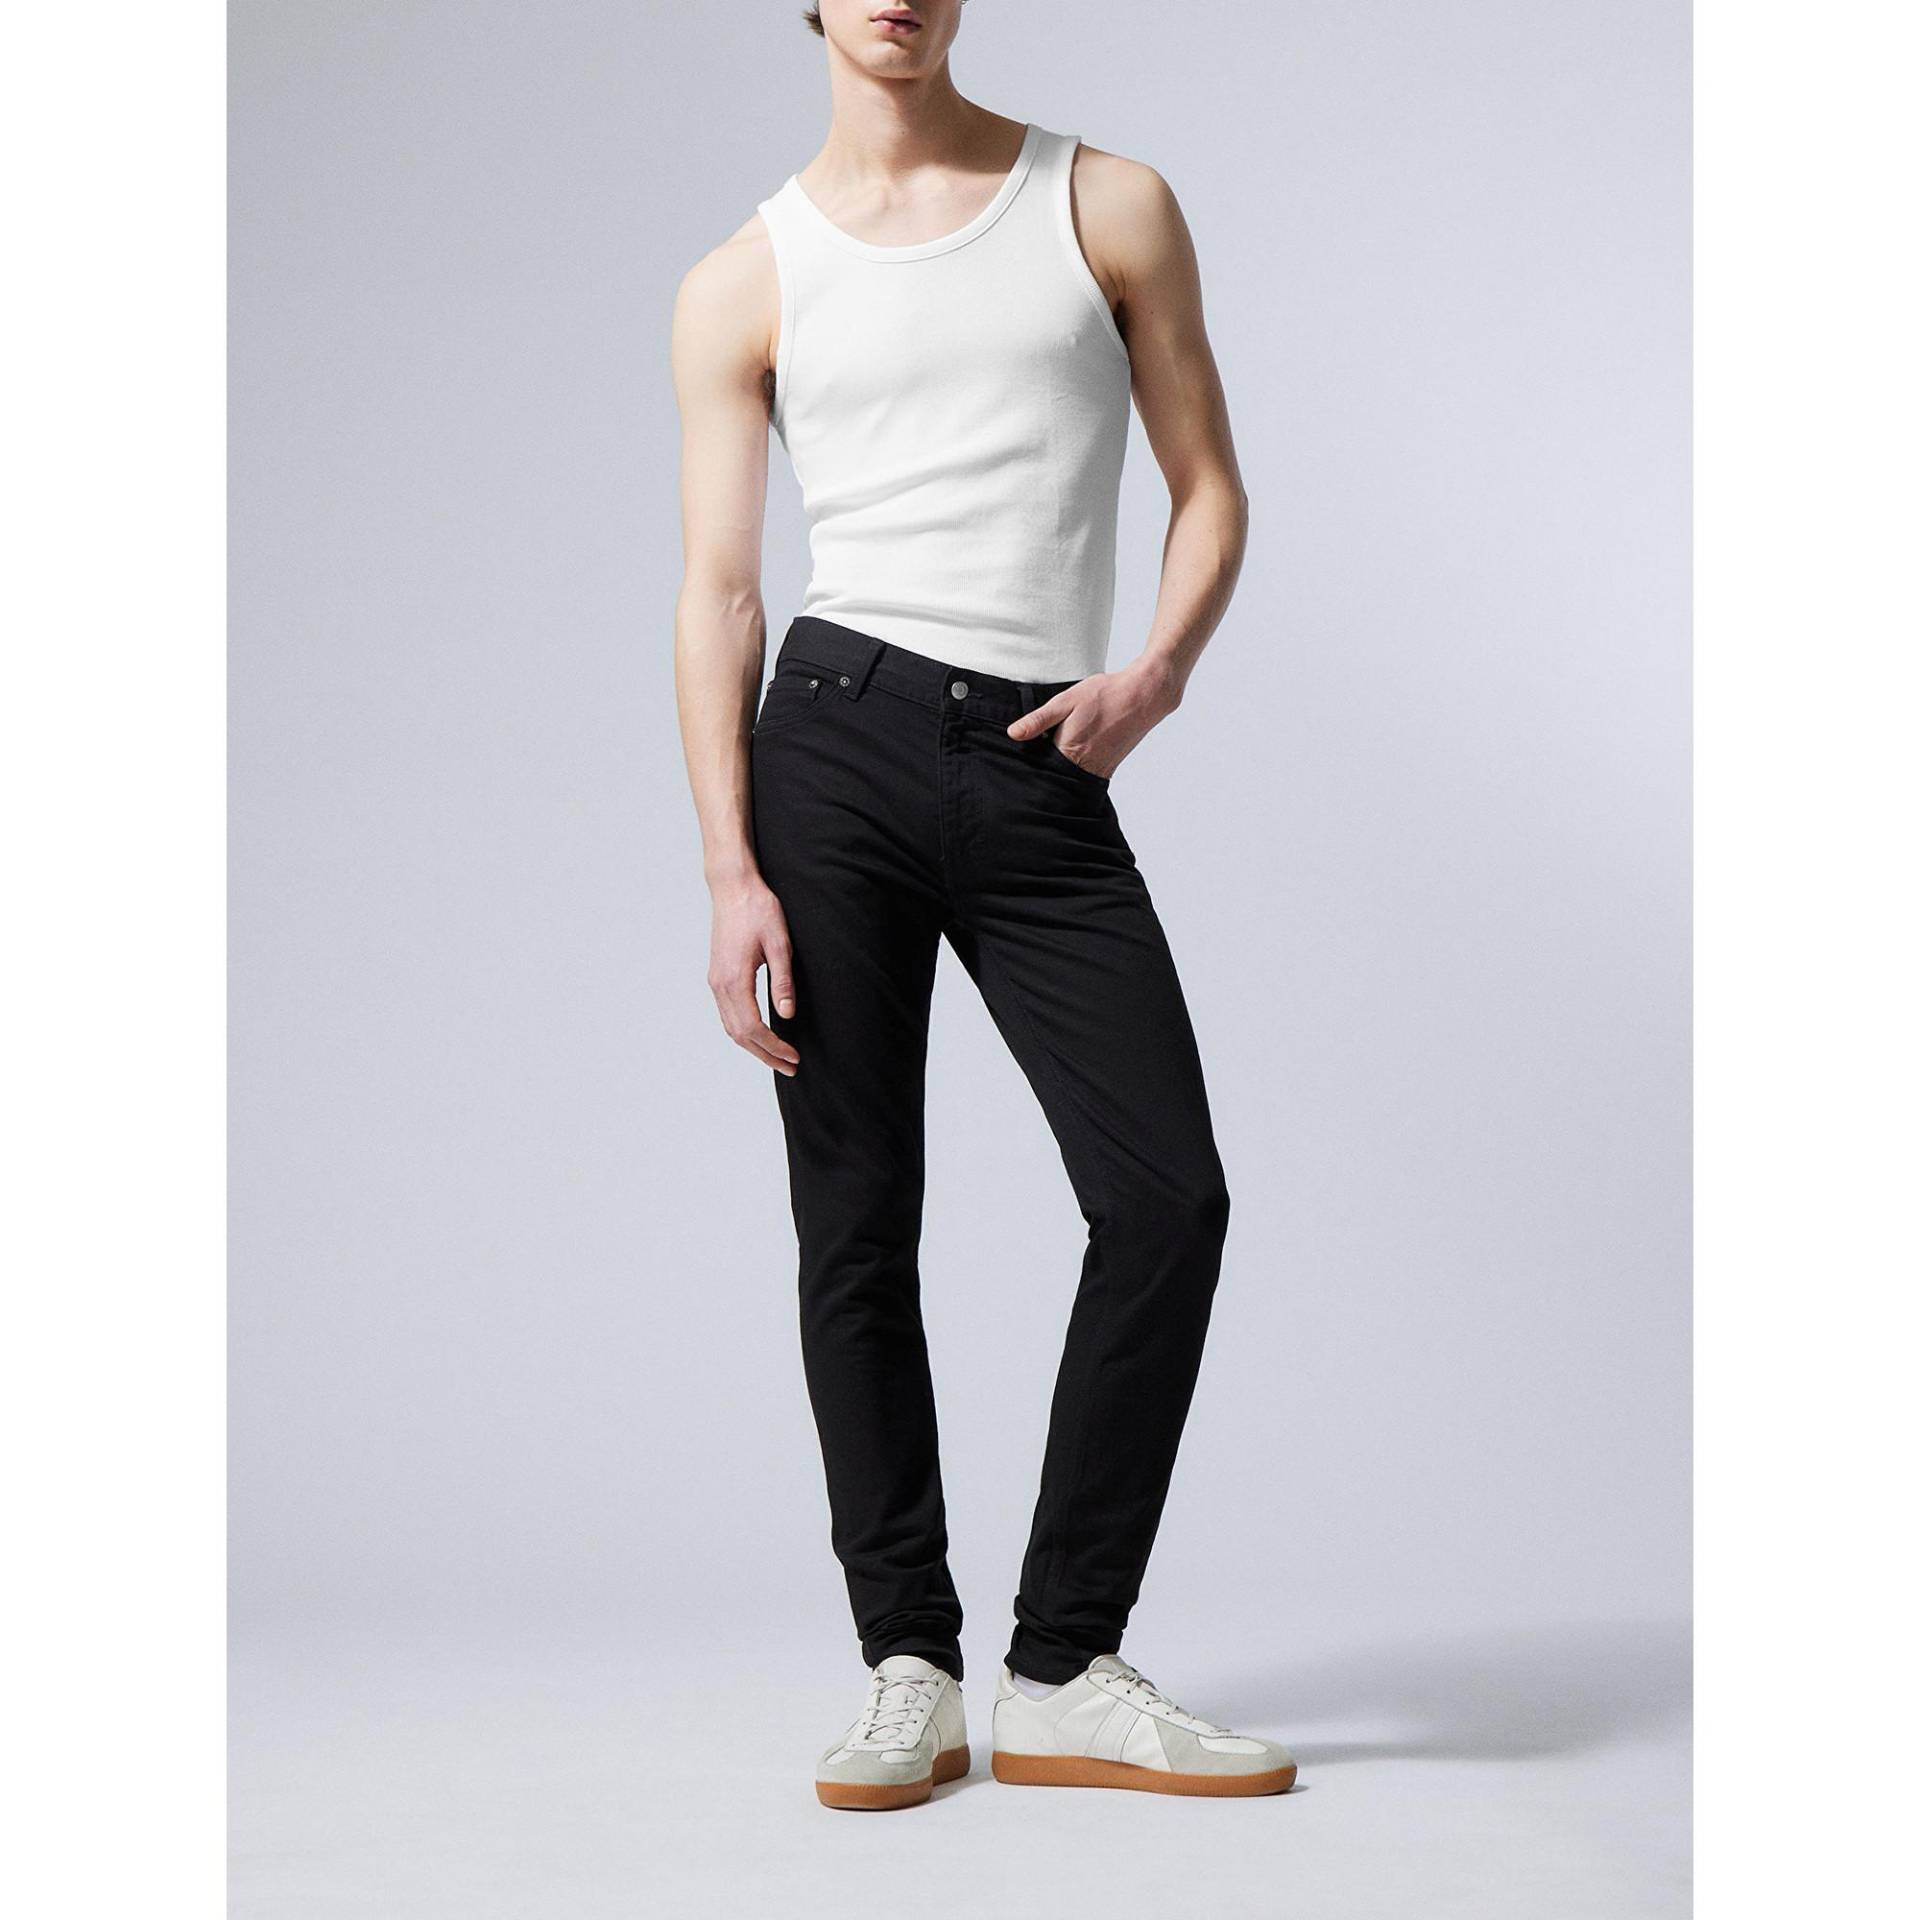 Jeans, Skinny Fit Herren Black L32/W33 von WEEKDAY